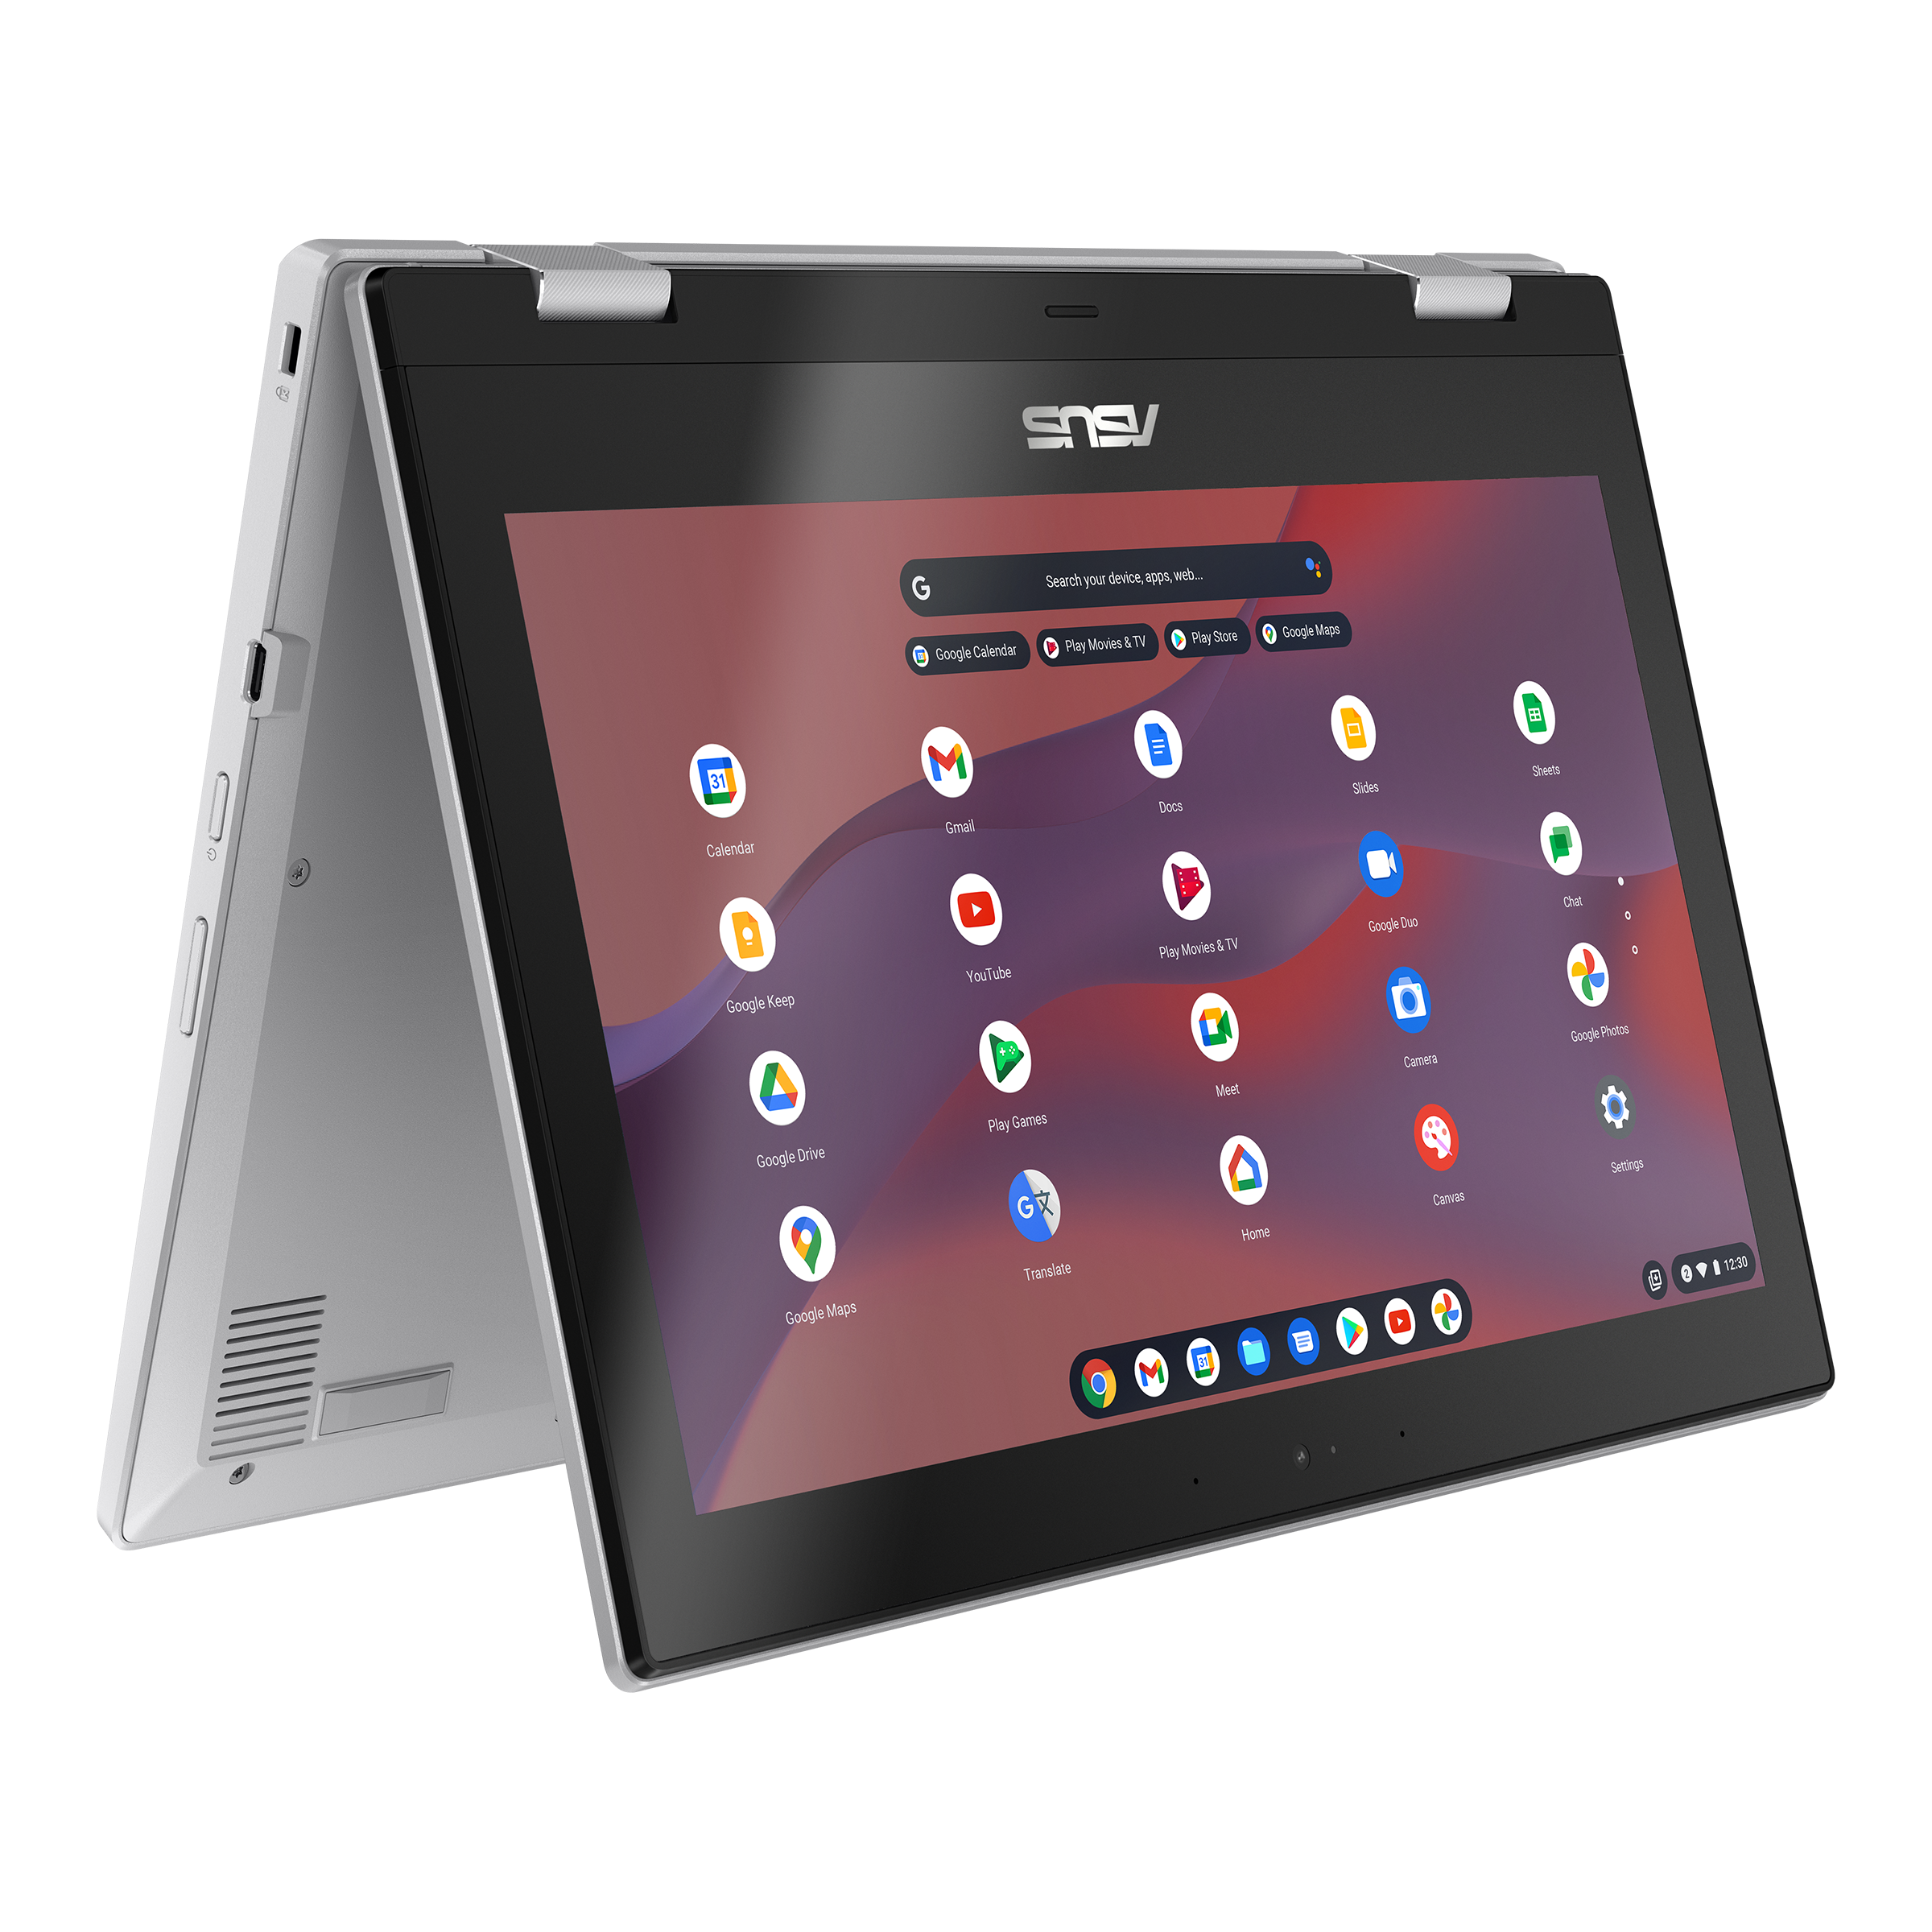 ASUS Chromebook クロームブック Flip CX1 CX1102